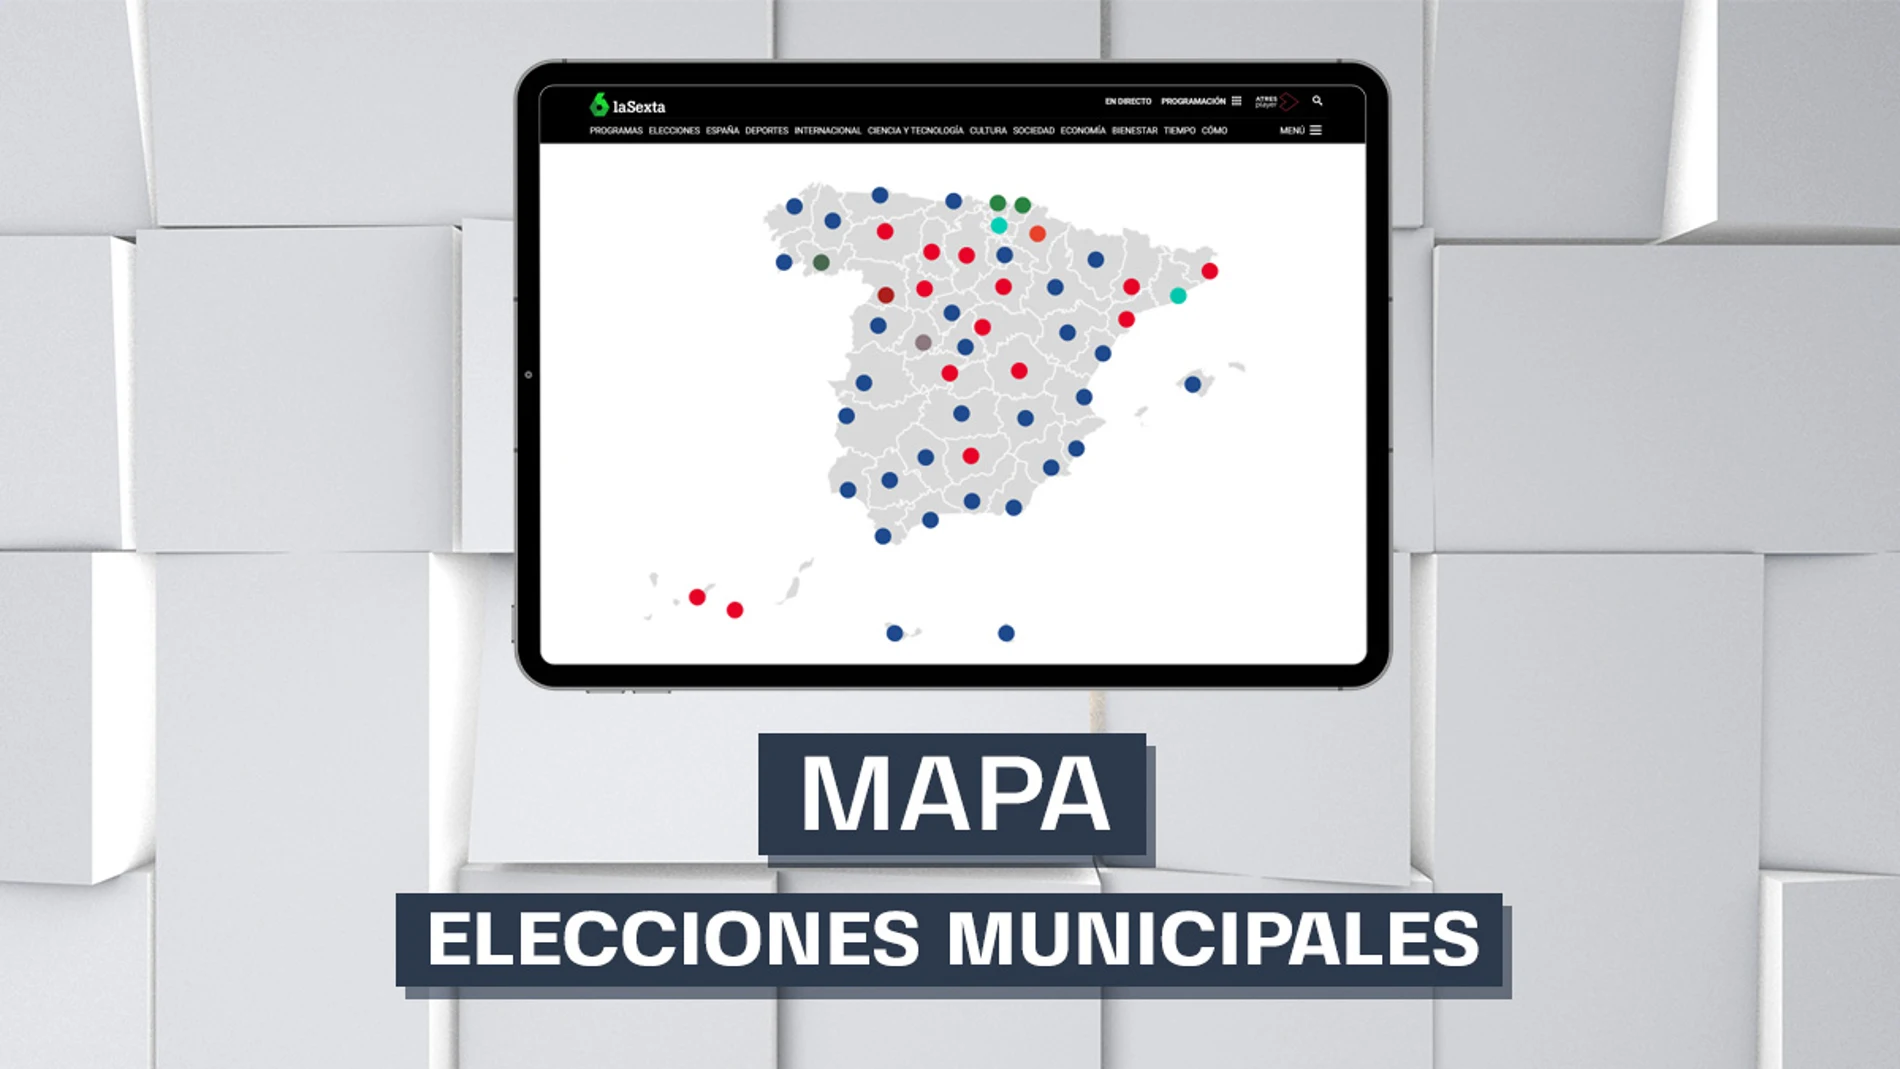 El mapa de las elecciones municipales del 28M